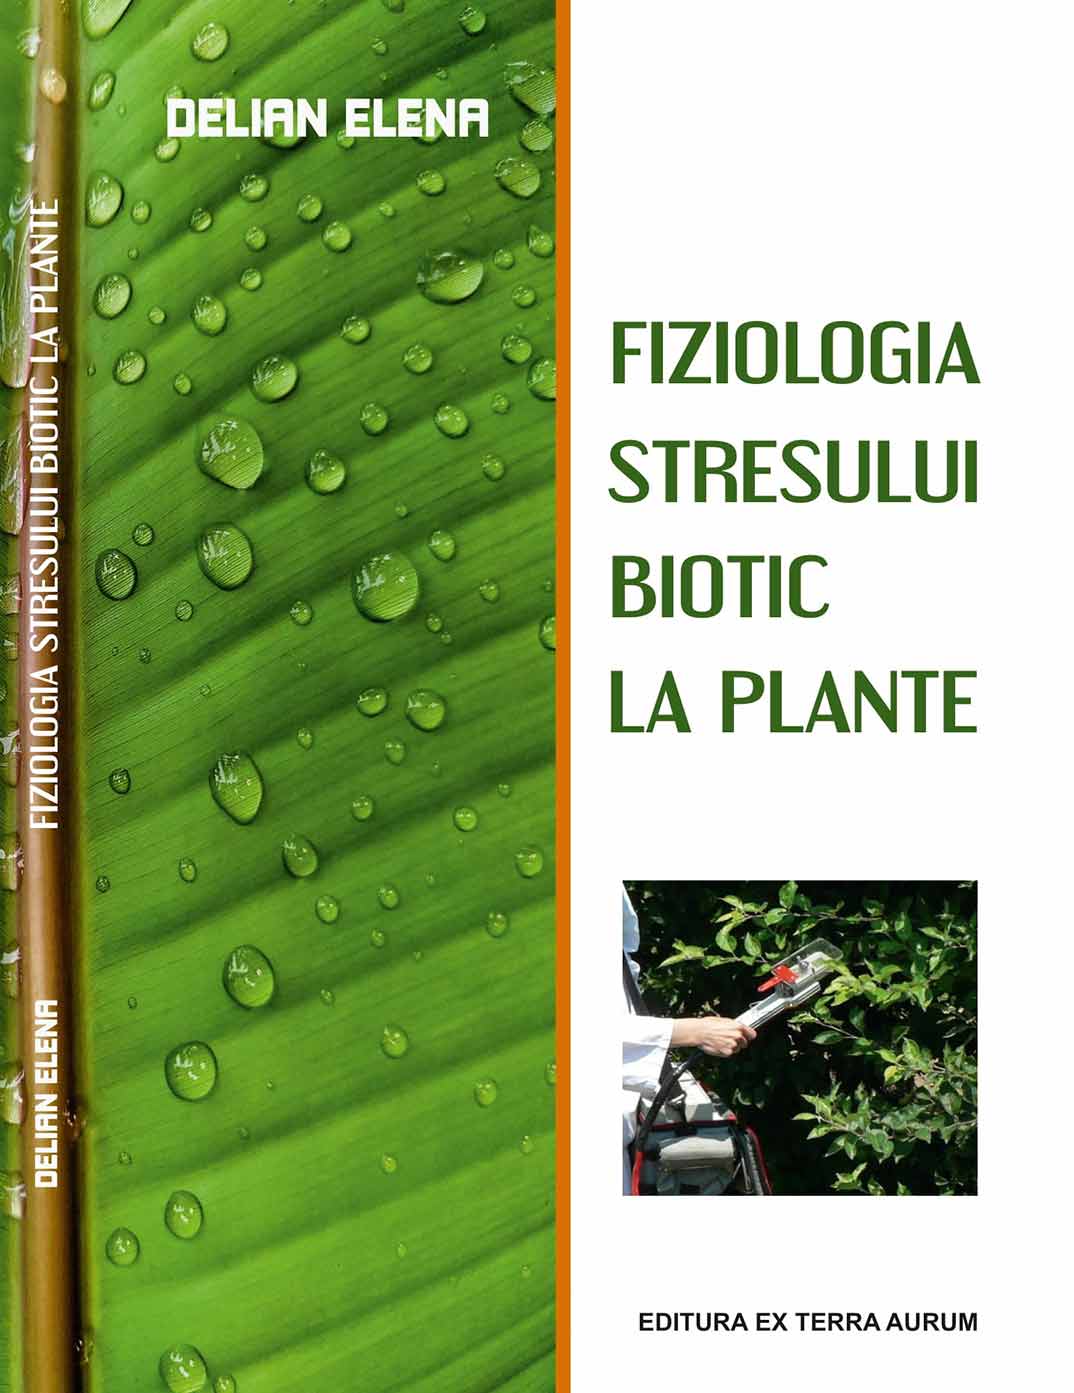 Coperta Fiziologia Stresului Biotic la Plante 2-1